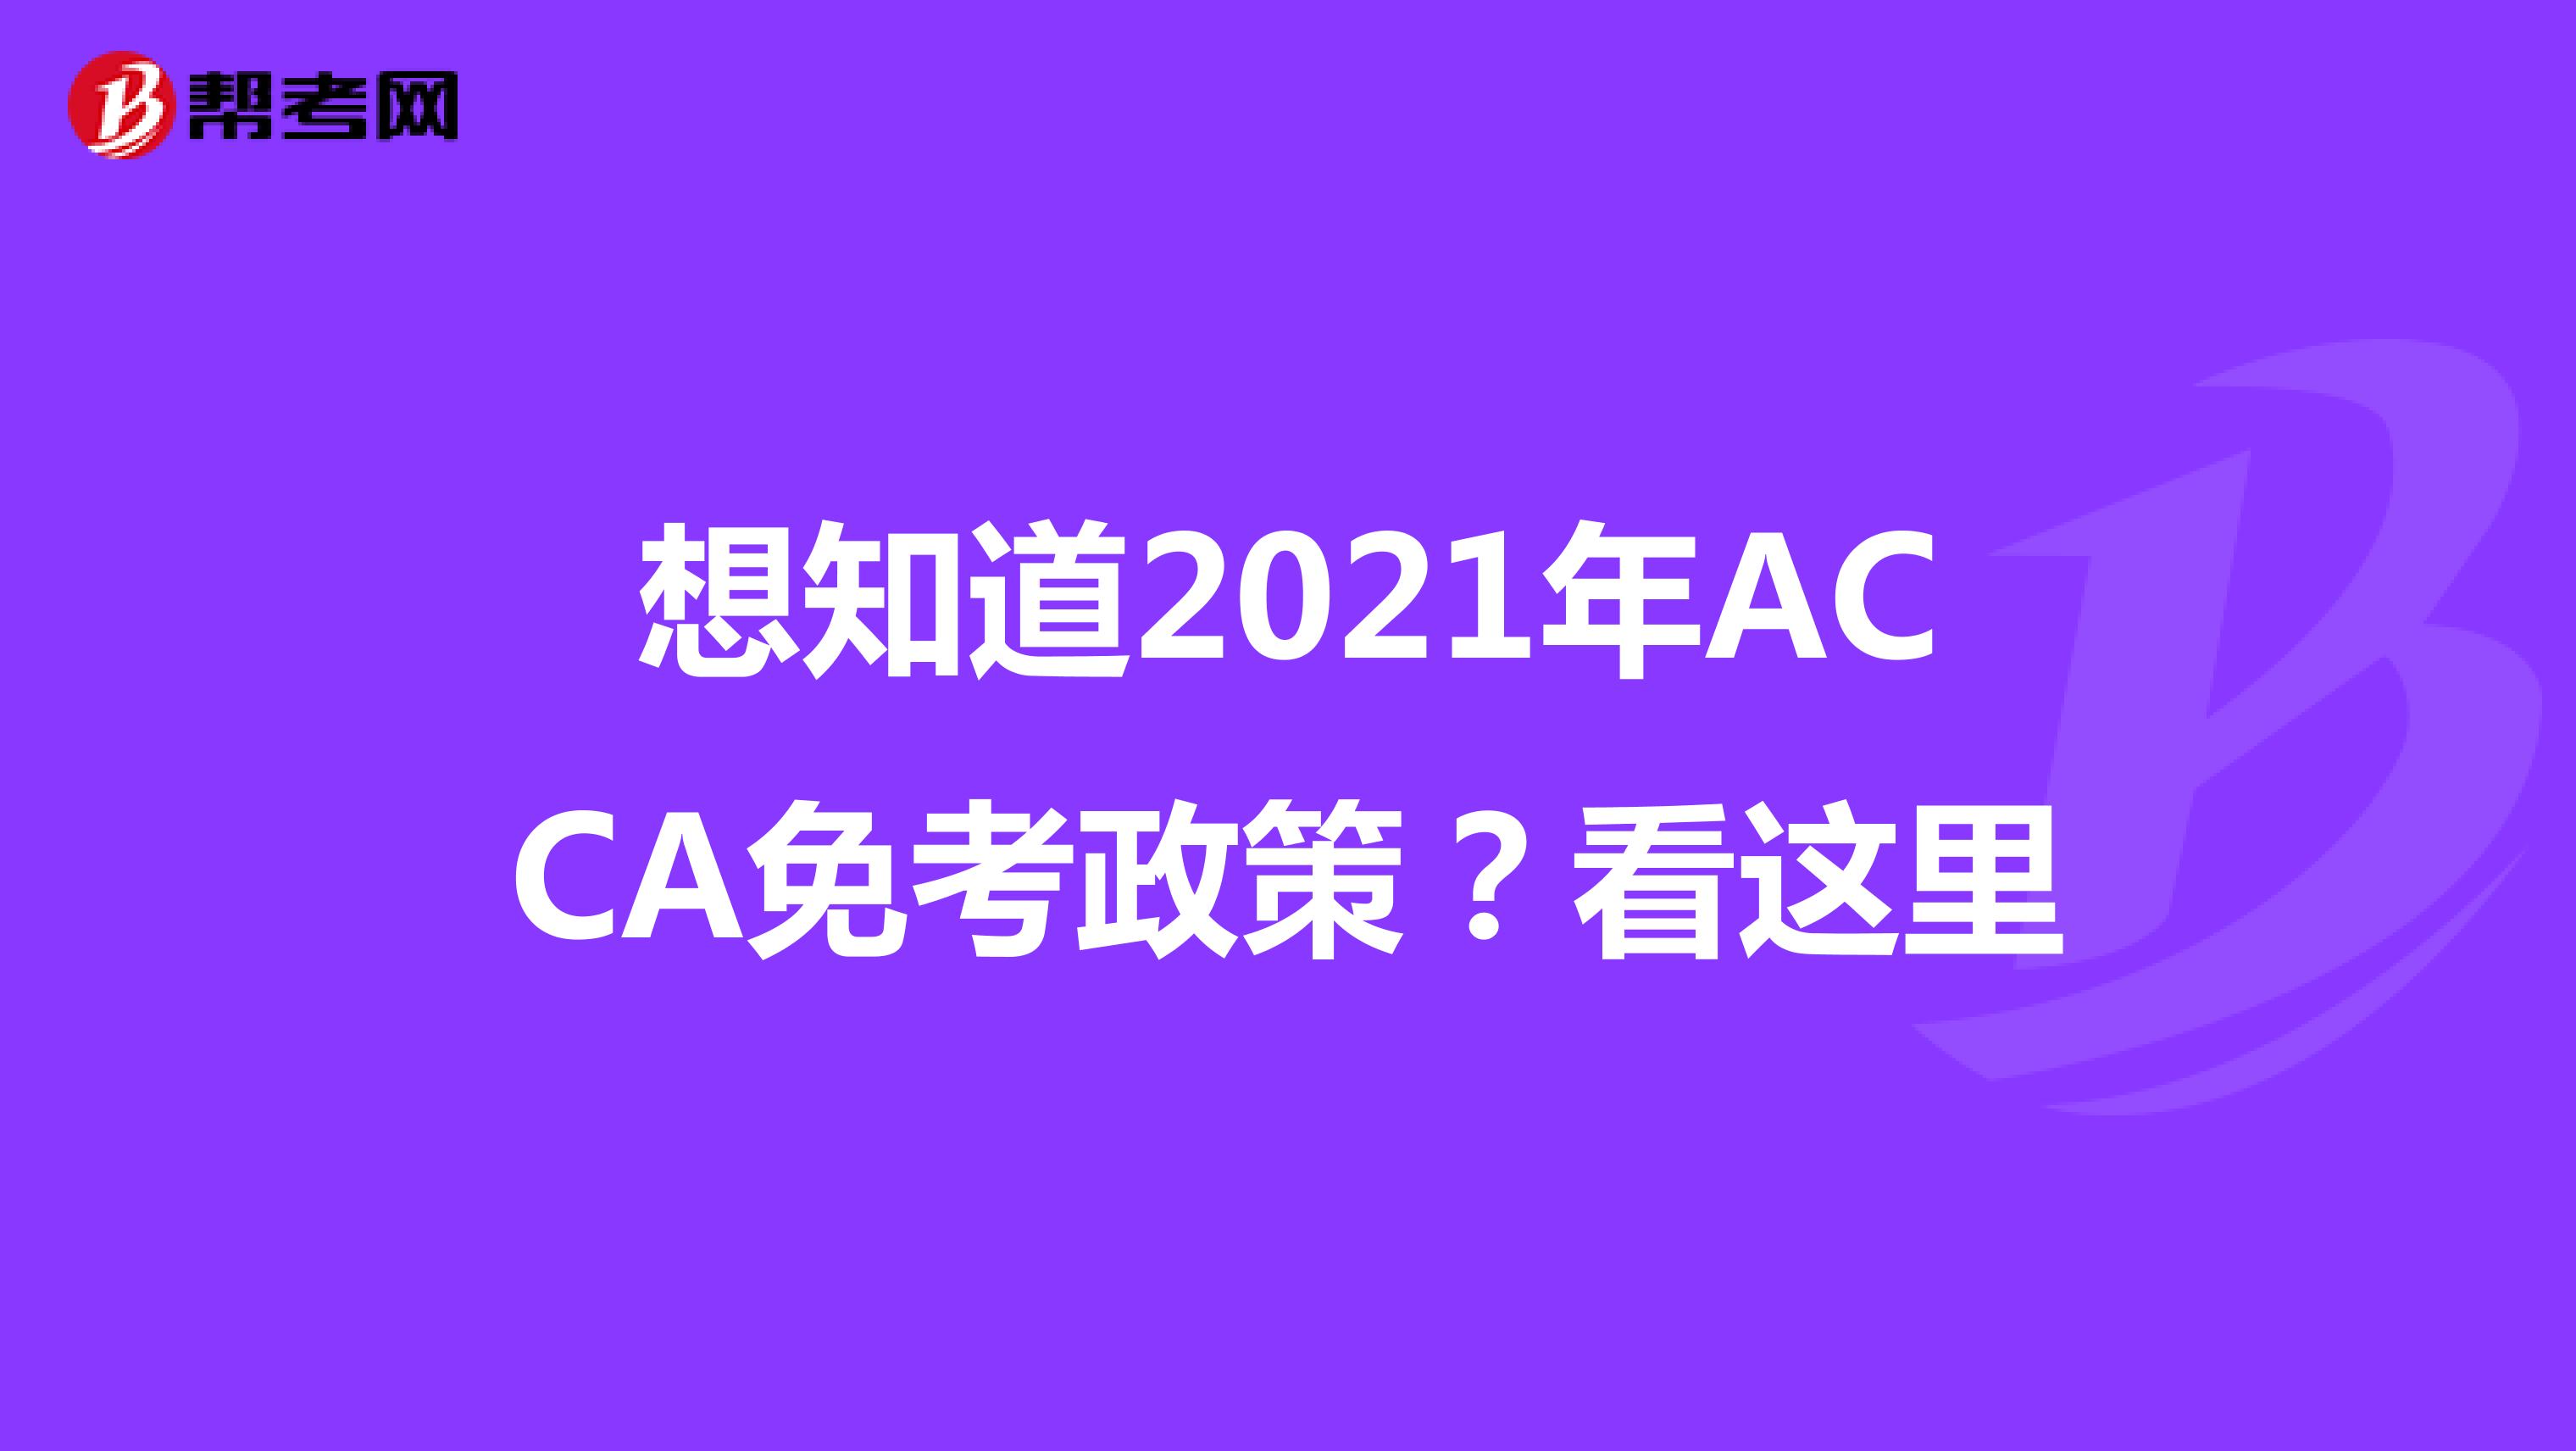 想知道2021年ACCA免考政策？看这里